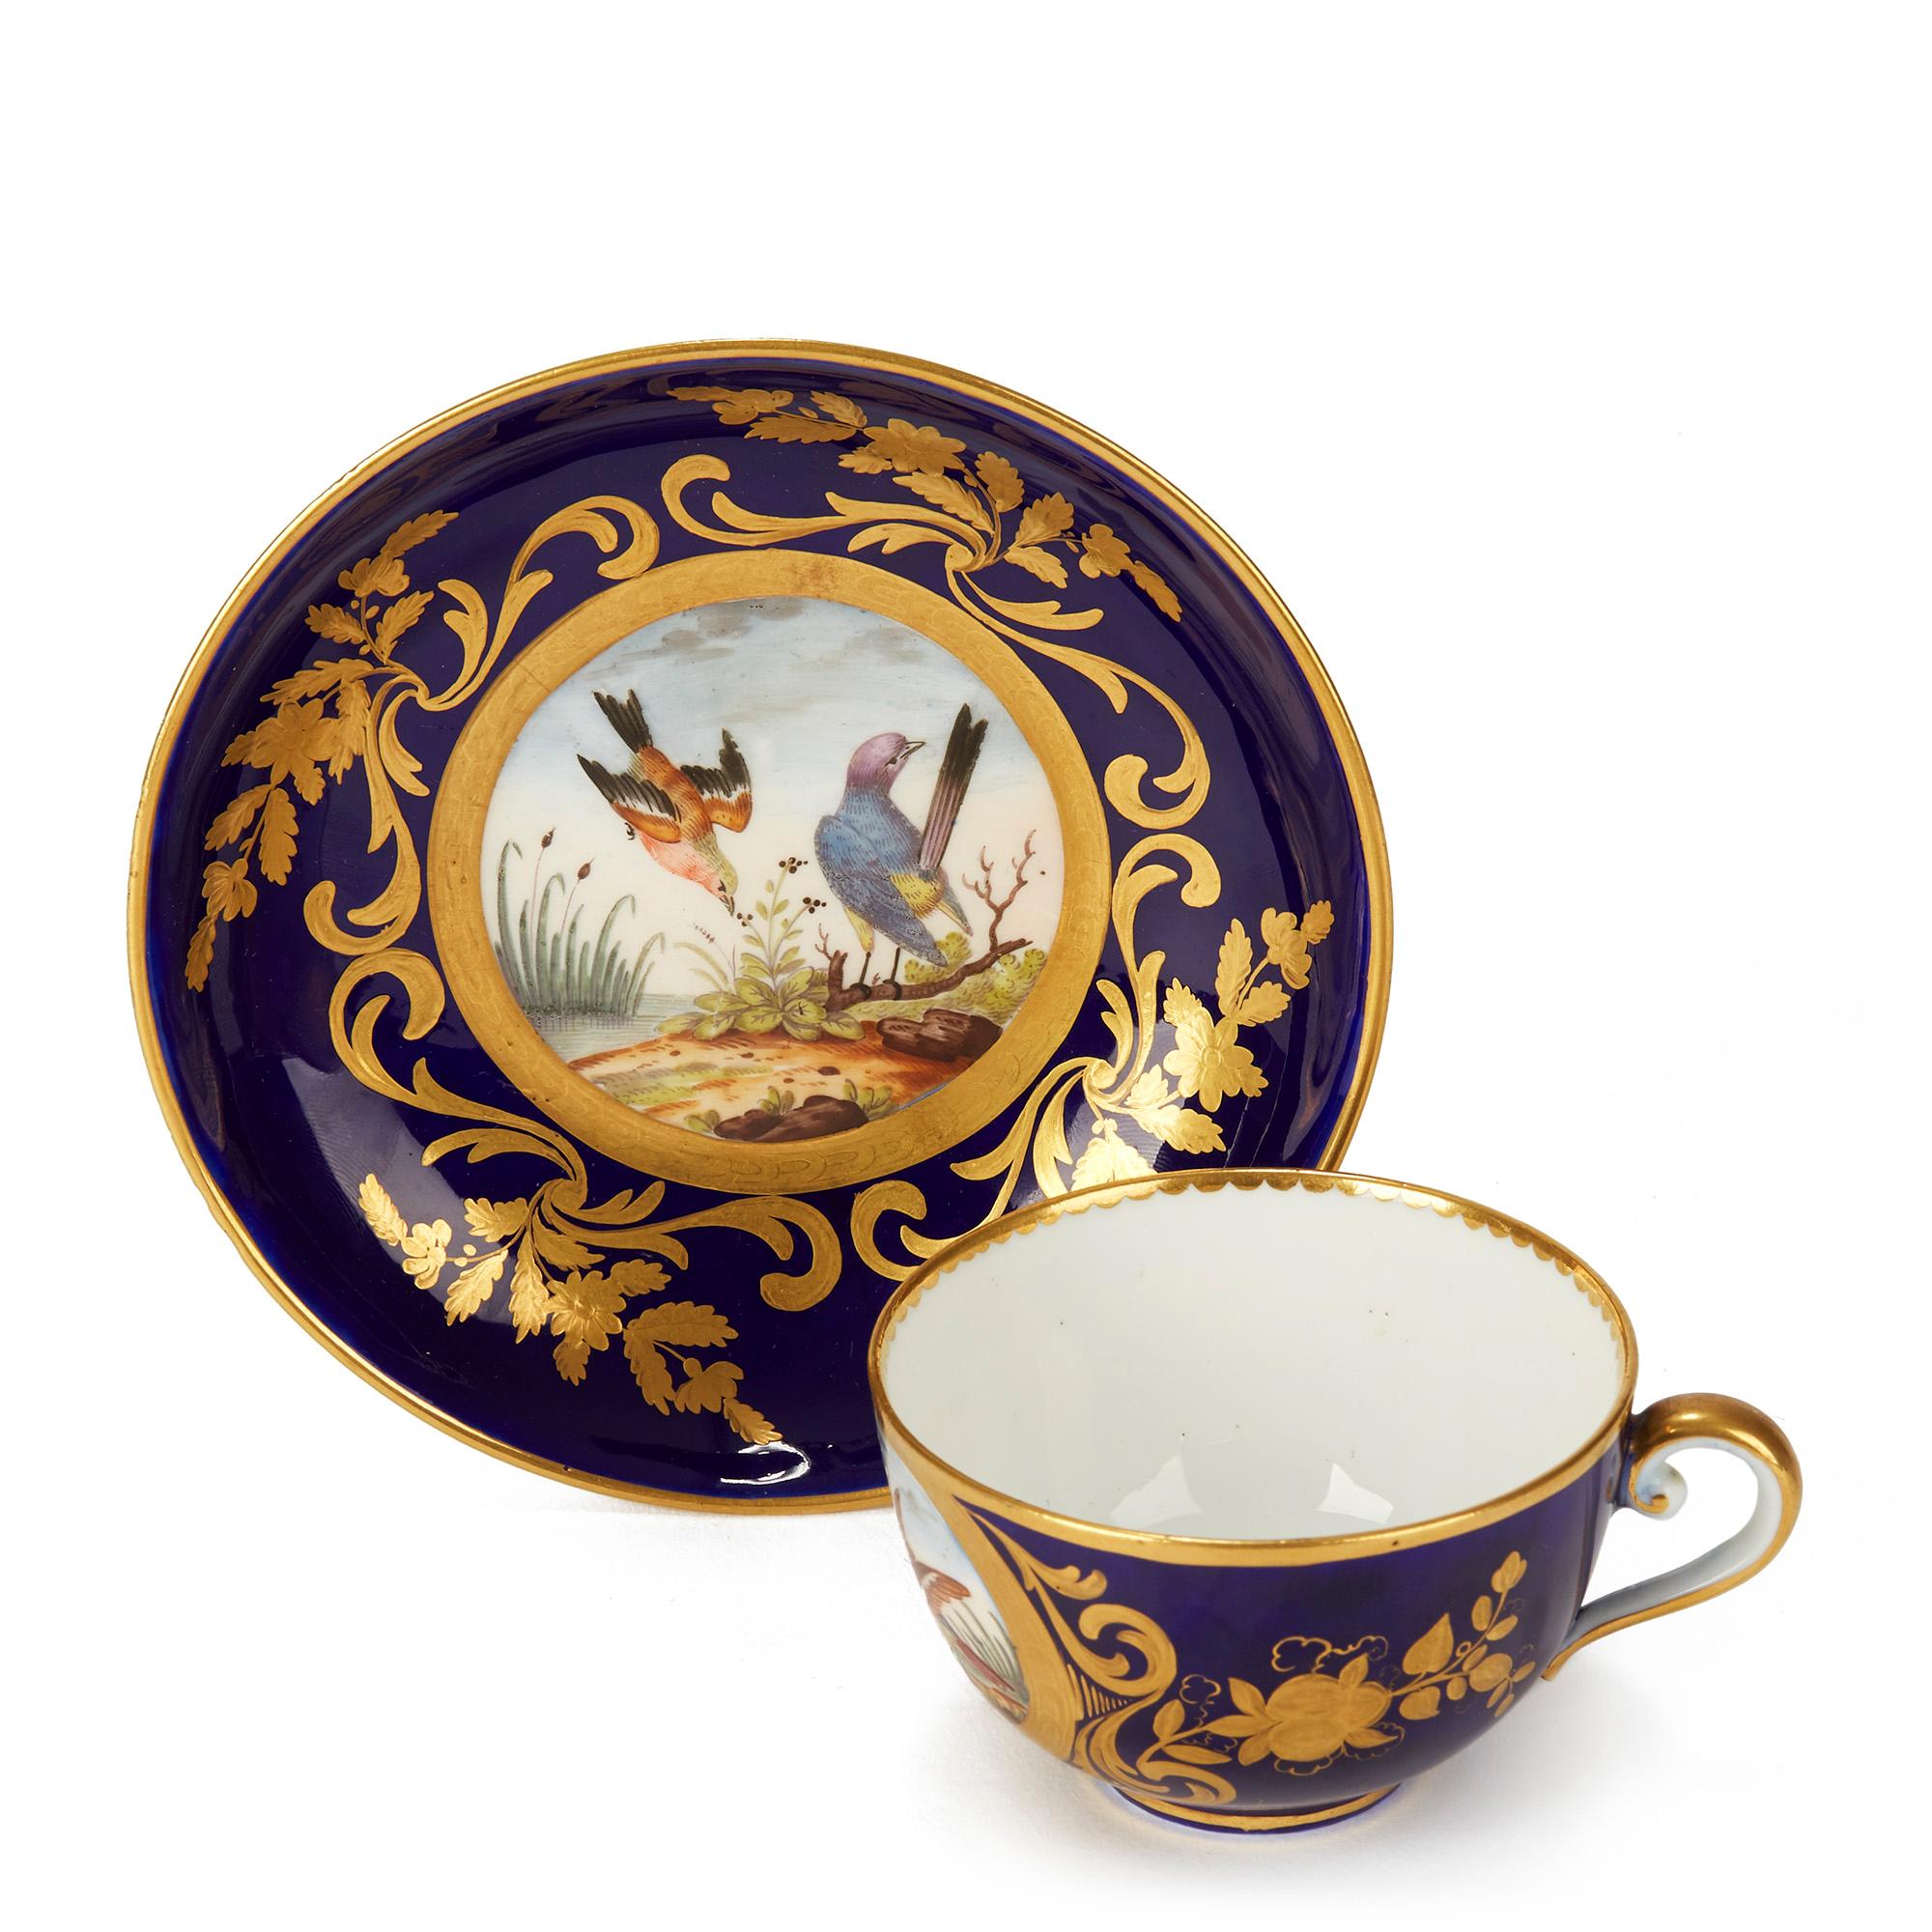 Exceptionnelle et rare tasse à thé et soucoupe en porcelaine de Sèvres, chacune peinte à la main d'oiseaux dans un paysage en émaux colorés et placée dans un cadre bleu cobalt délicatement rehaussé de motifs dorés comprenant des motifs de feuilles